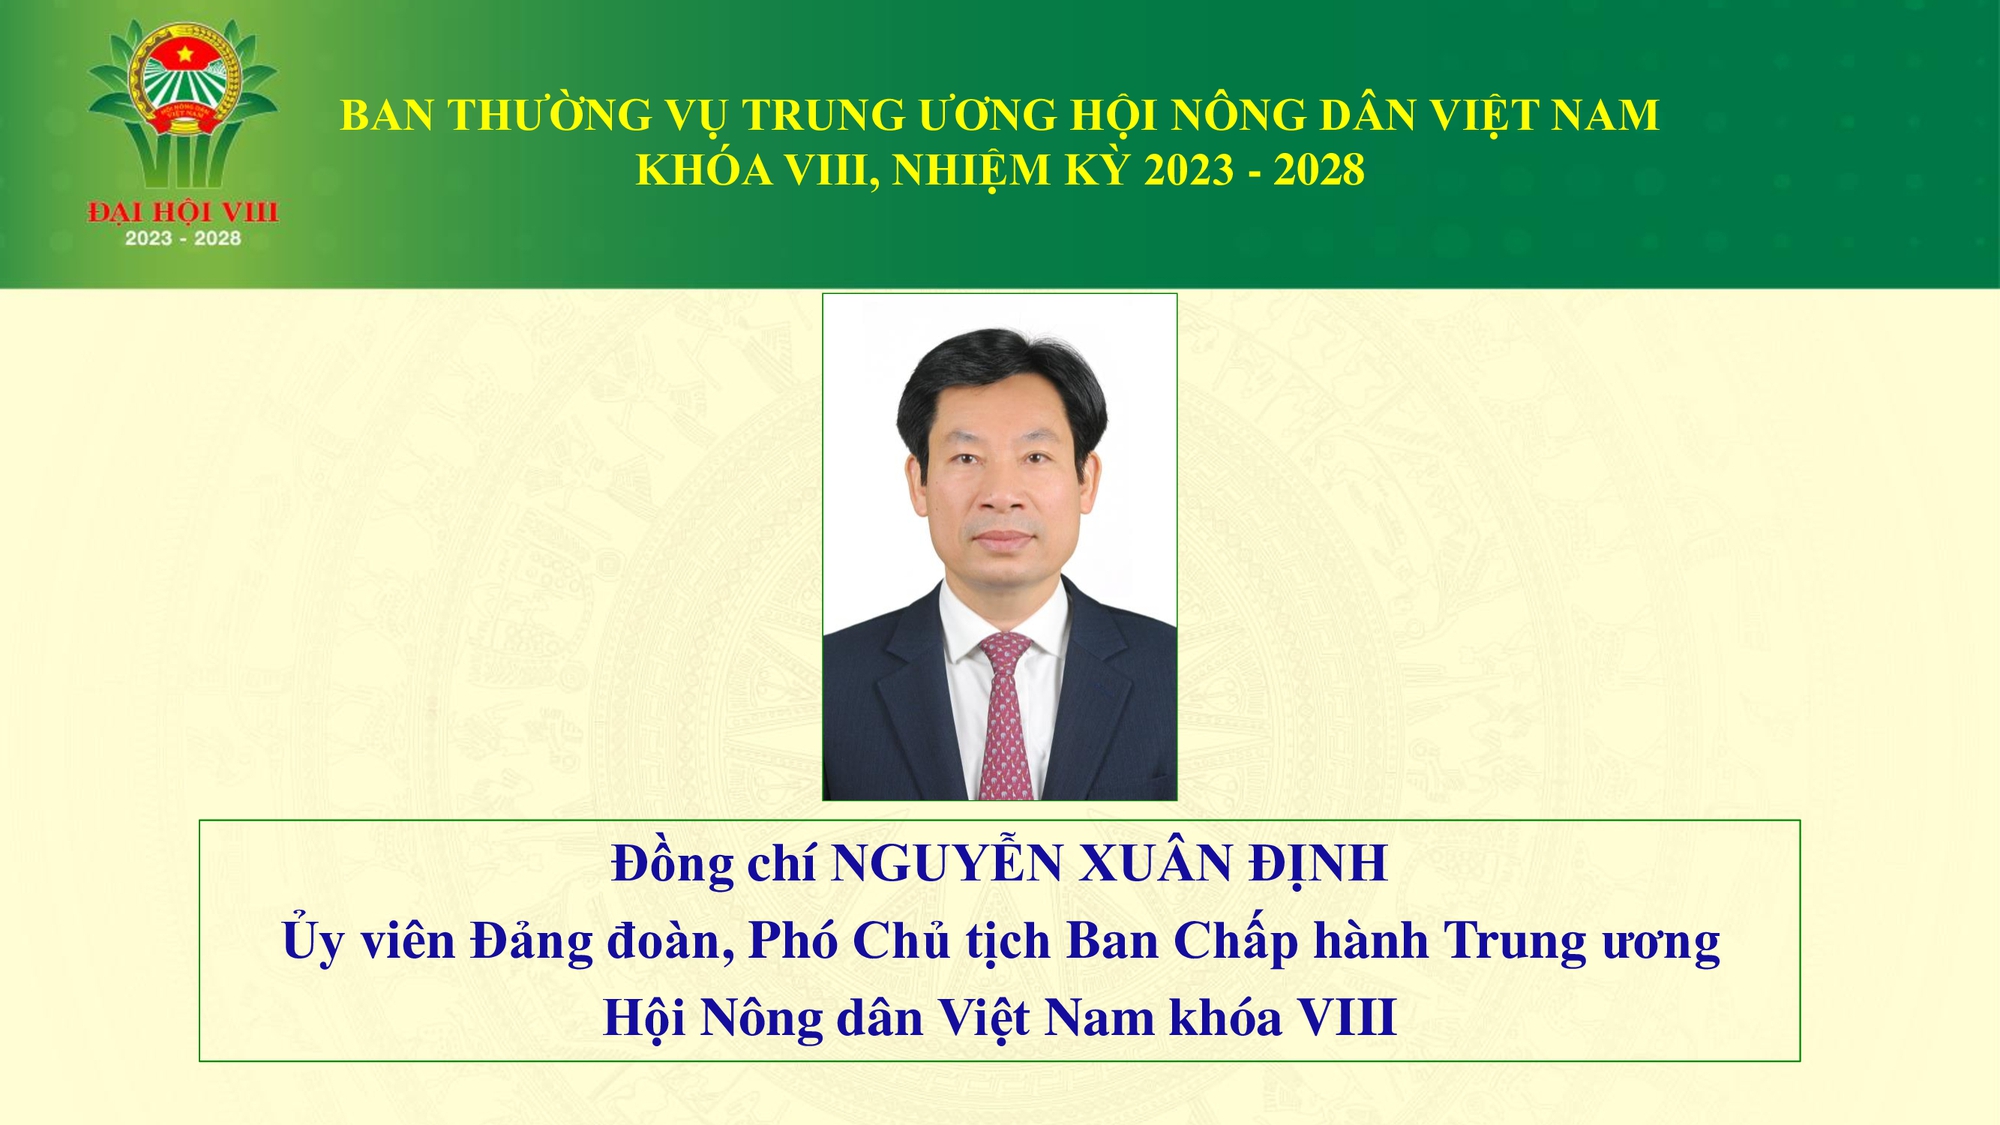 Danh sách Ban Thường vụ Trung ương Hội Nông dân Việt Nam khoá VIII- Ảnh 5.